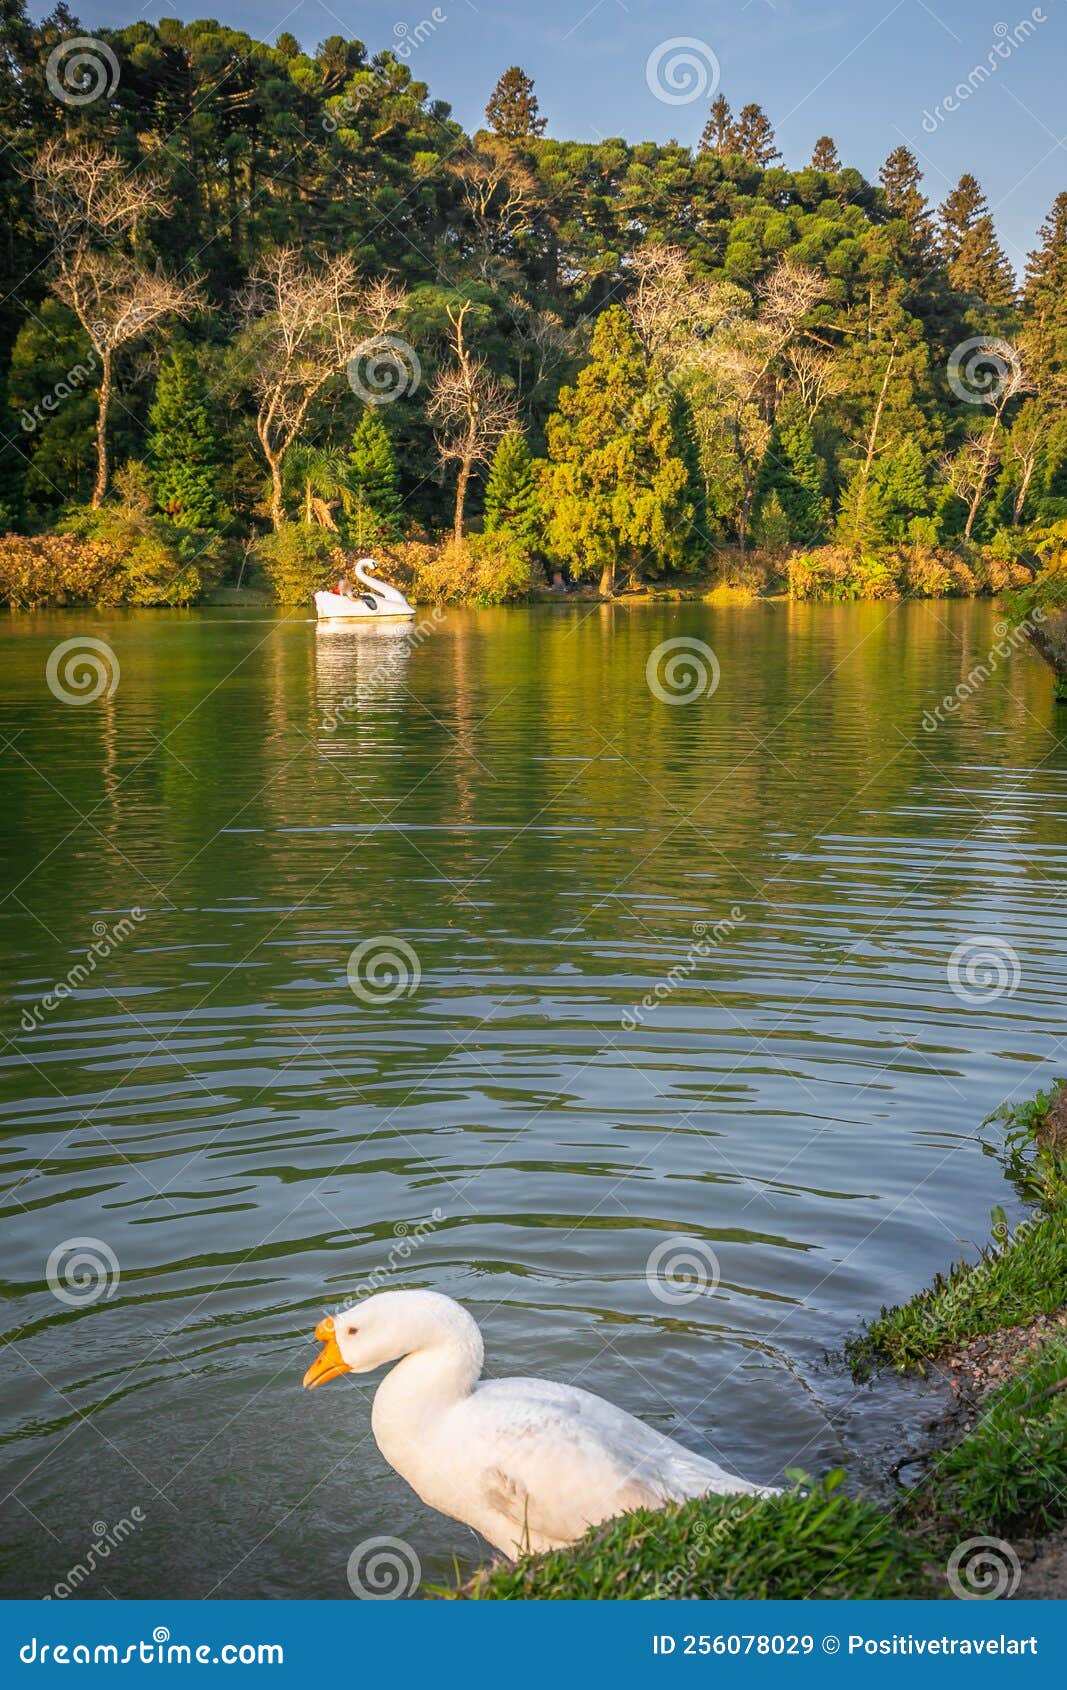 lago negro, black lake, and swan pedal boats, gramado, rio grande do sul, brazil